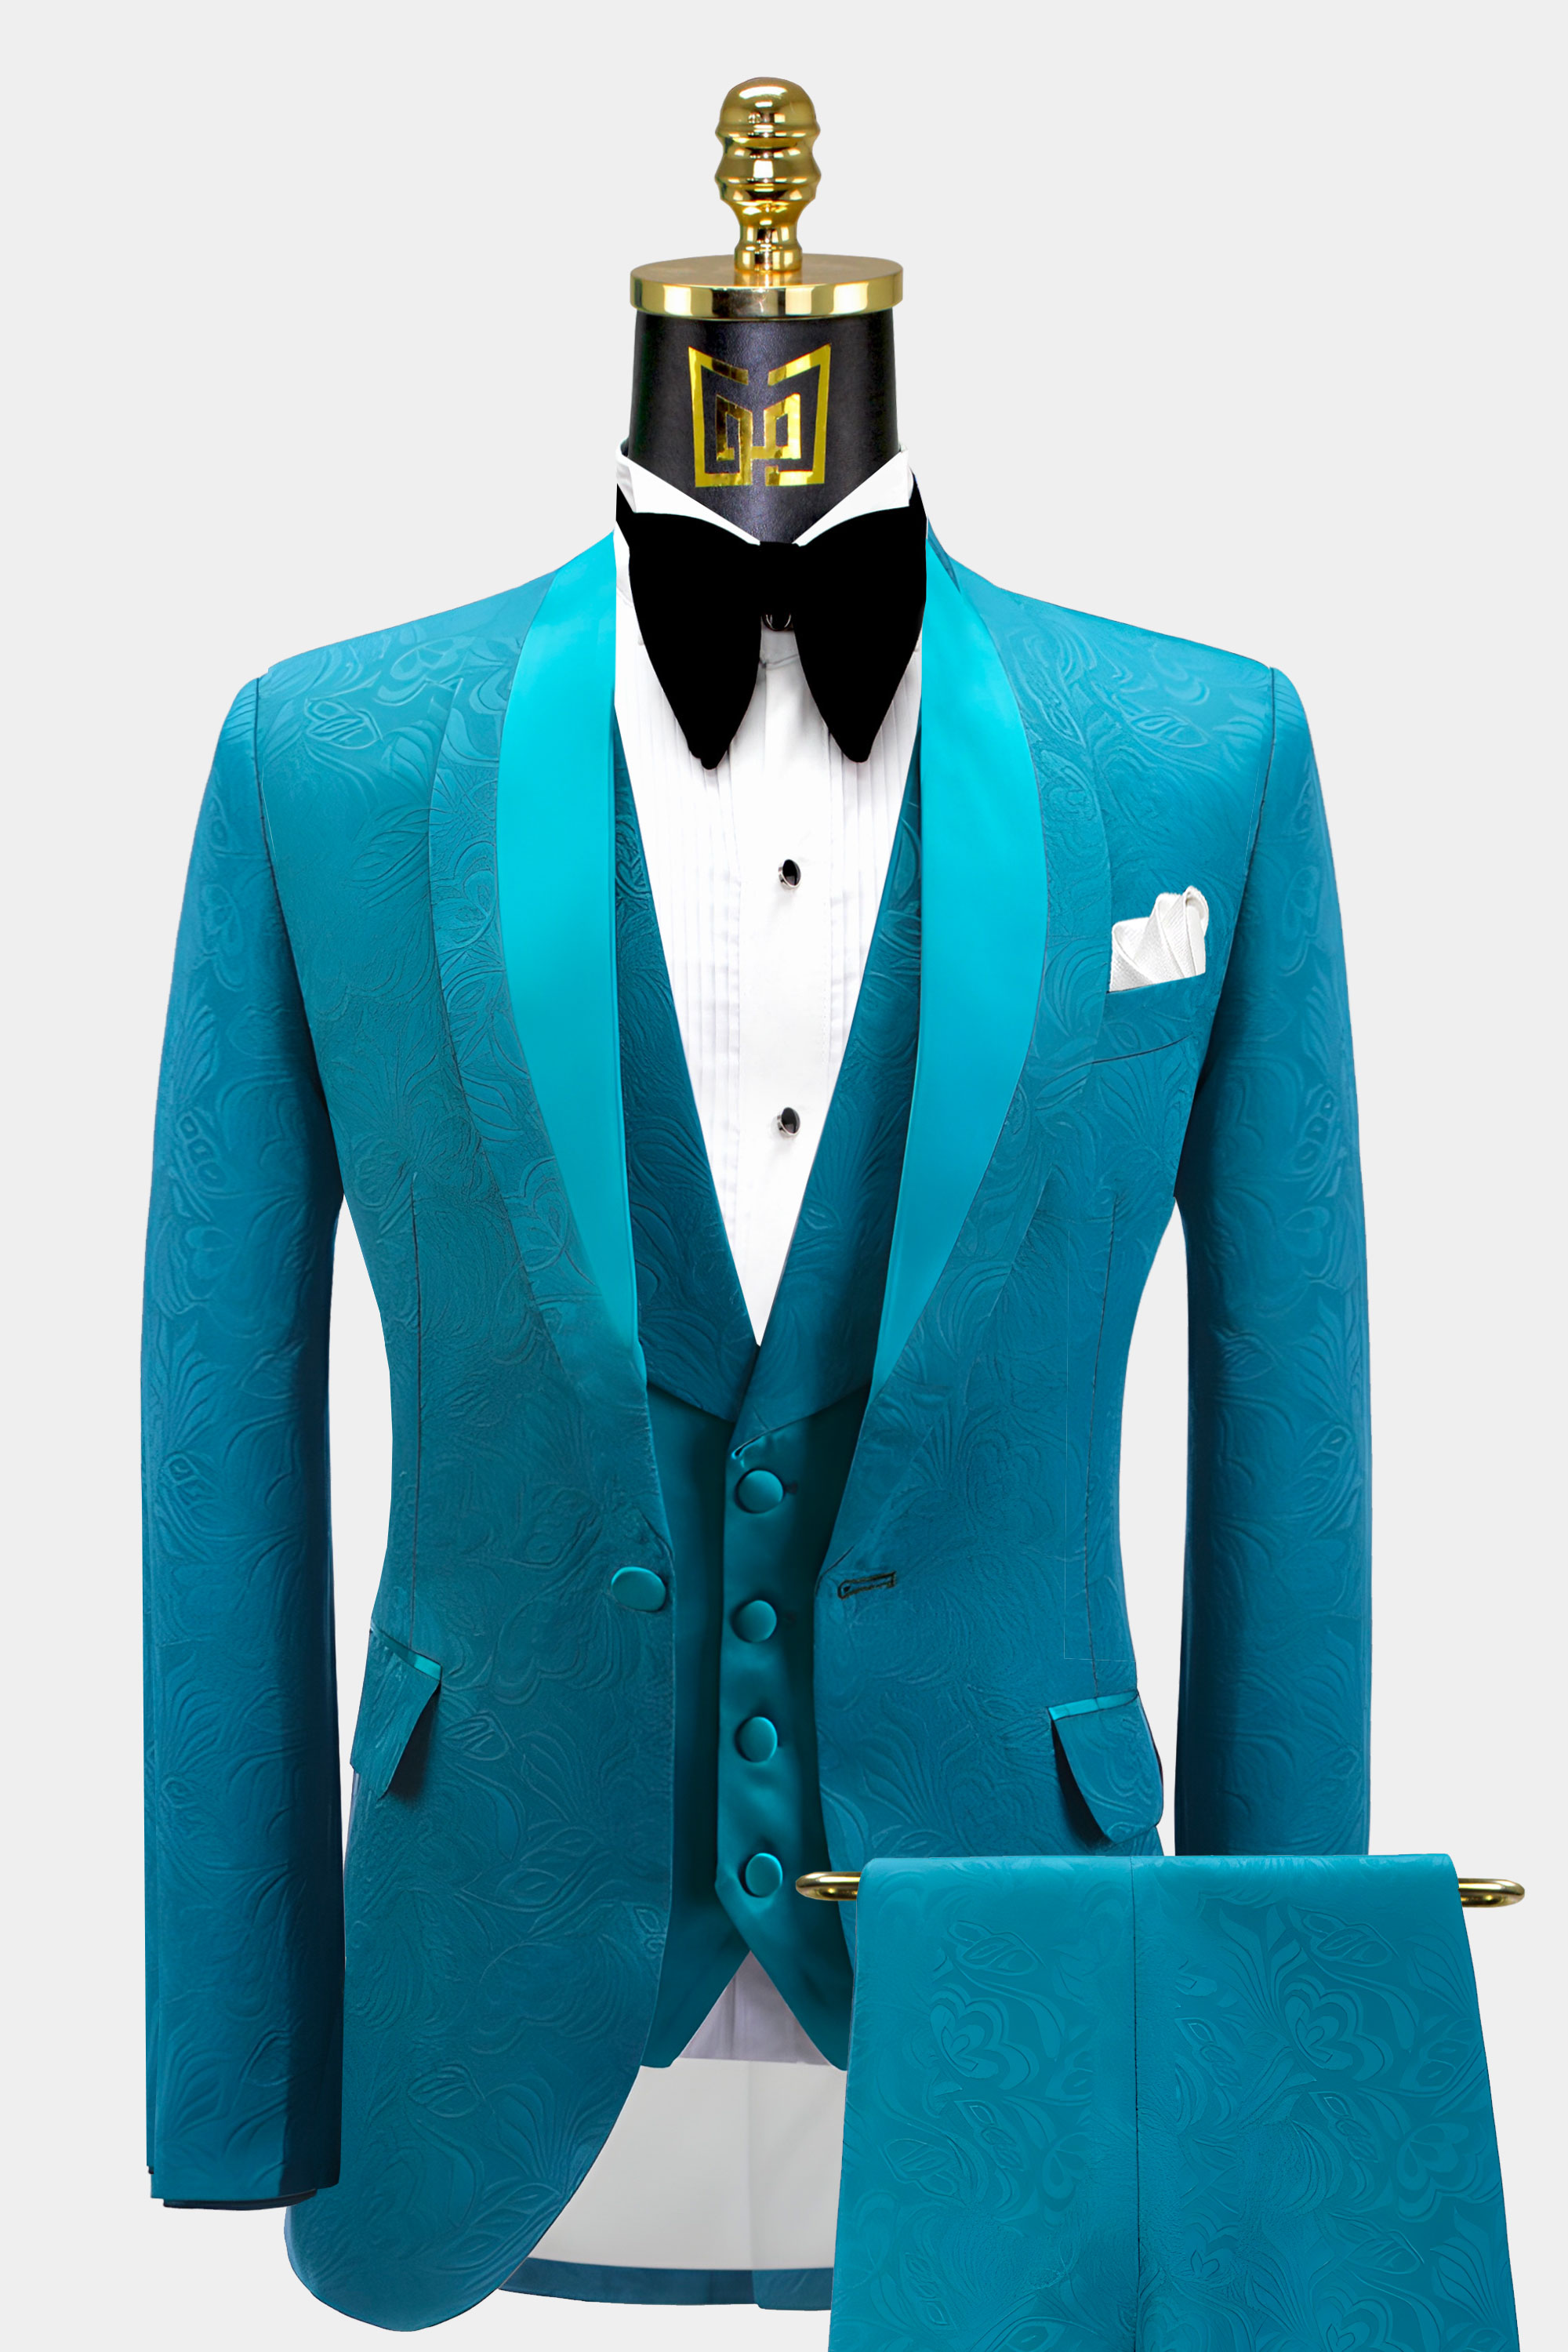 Mens Turquoise Blue Tuxedo Groom Prom Wedding Suit For Men From Gentlemansguru.com  